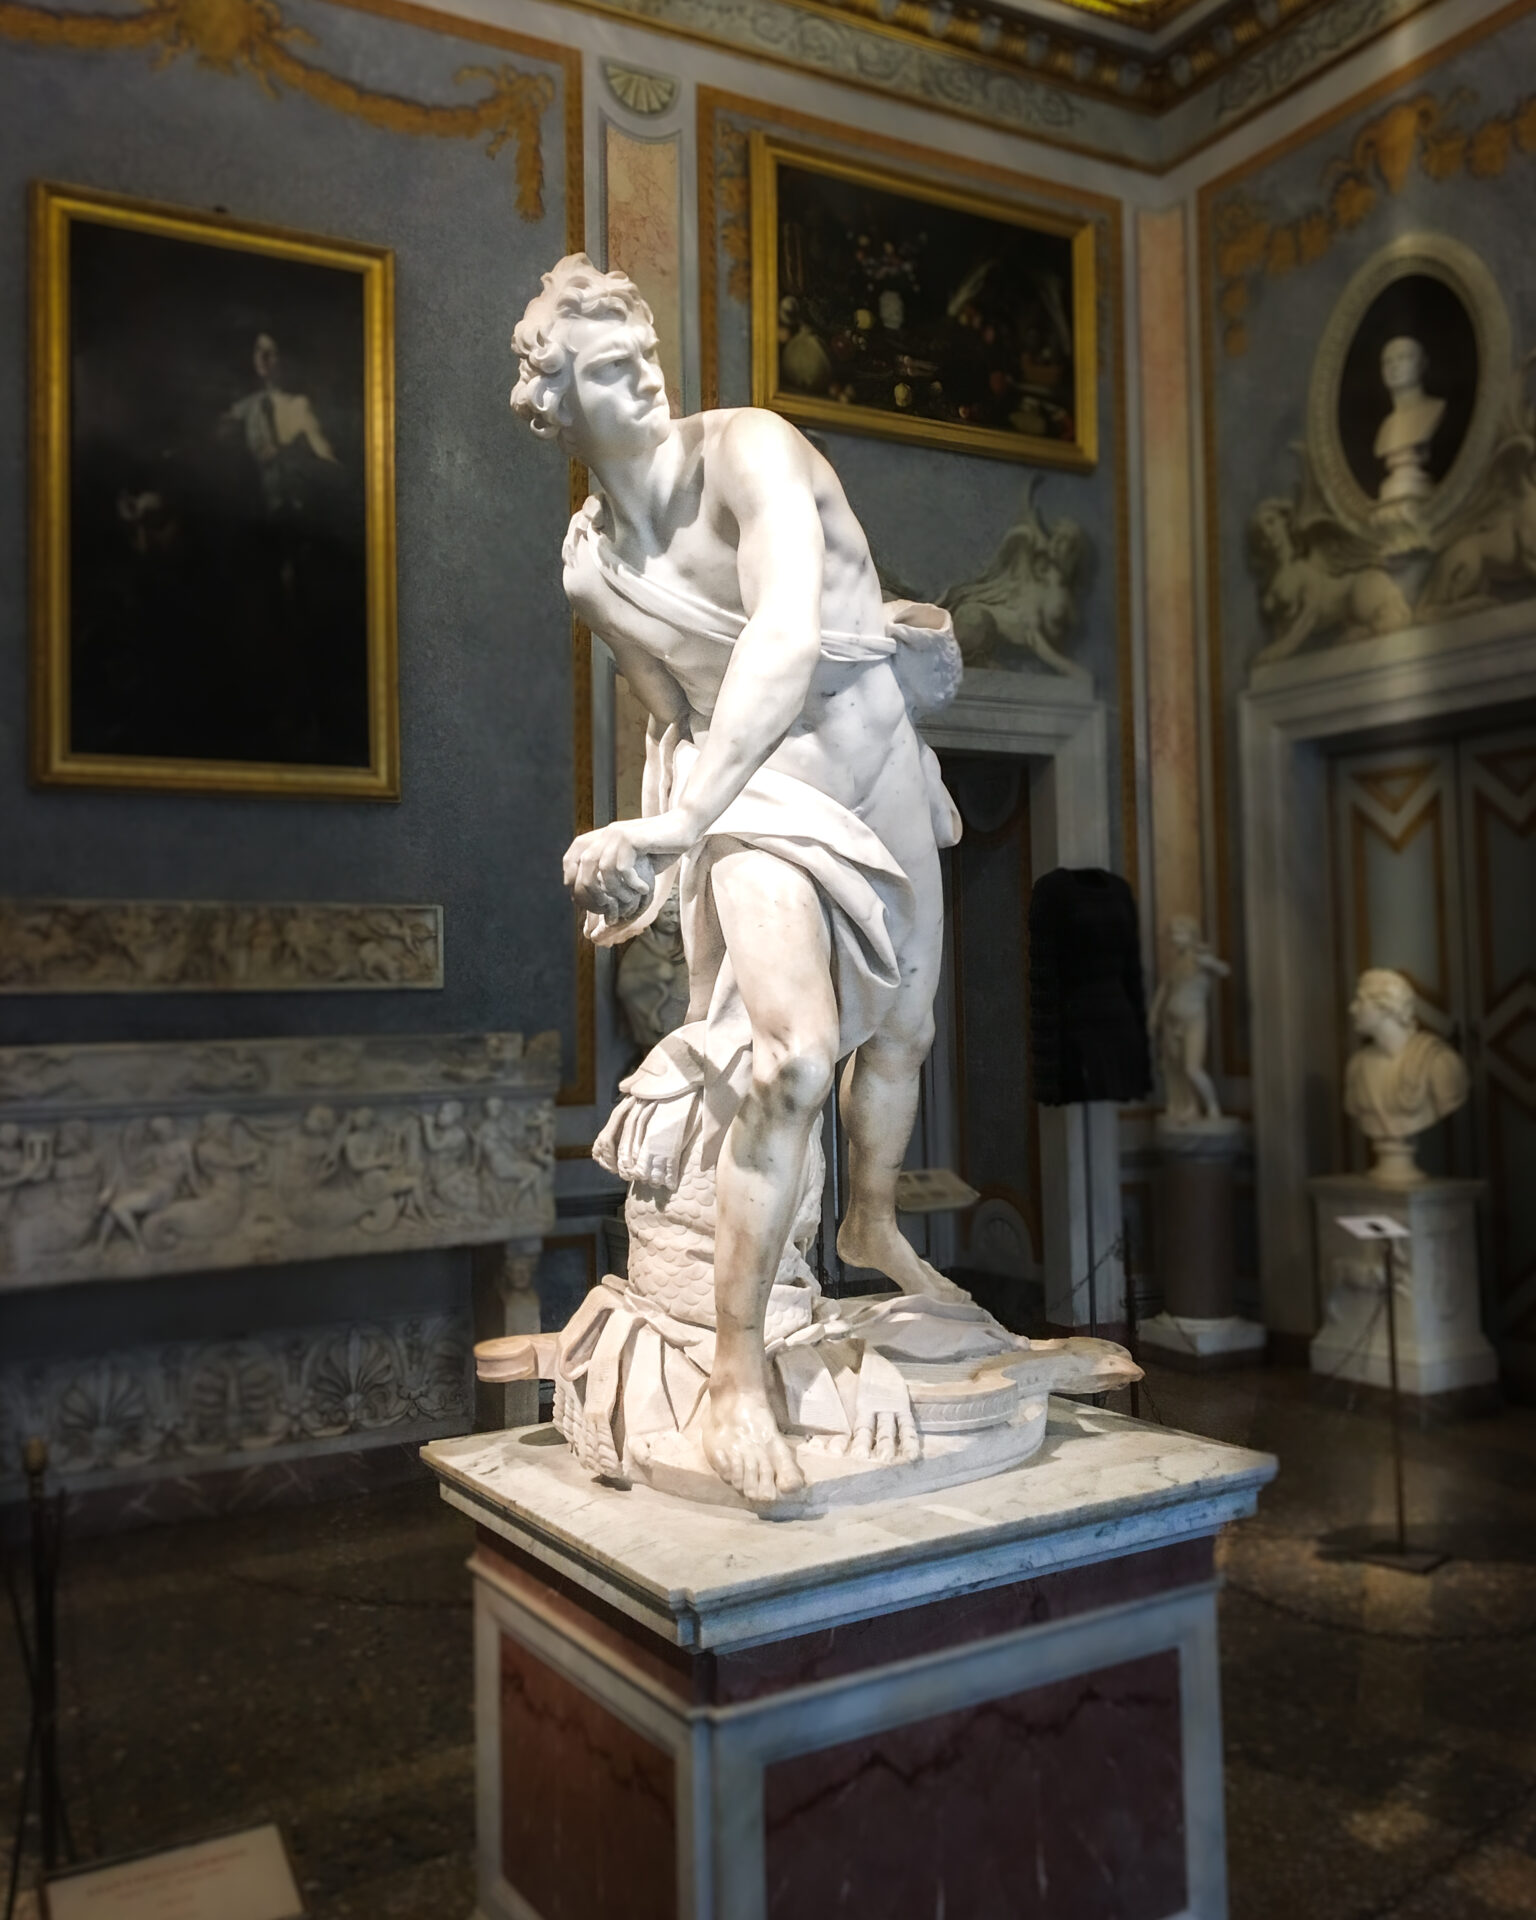 Interior of Villa Borgese and Bernini's David marble sculpture in Rome, Italy